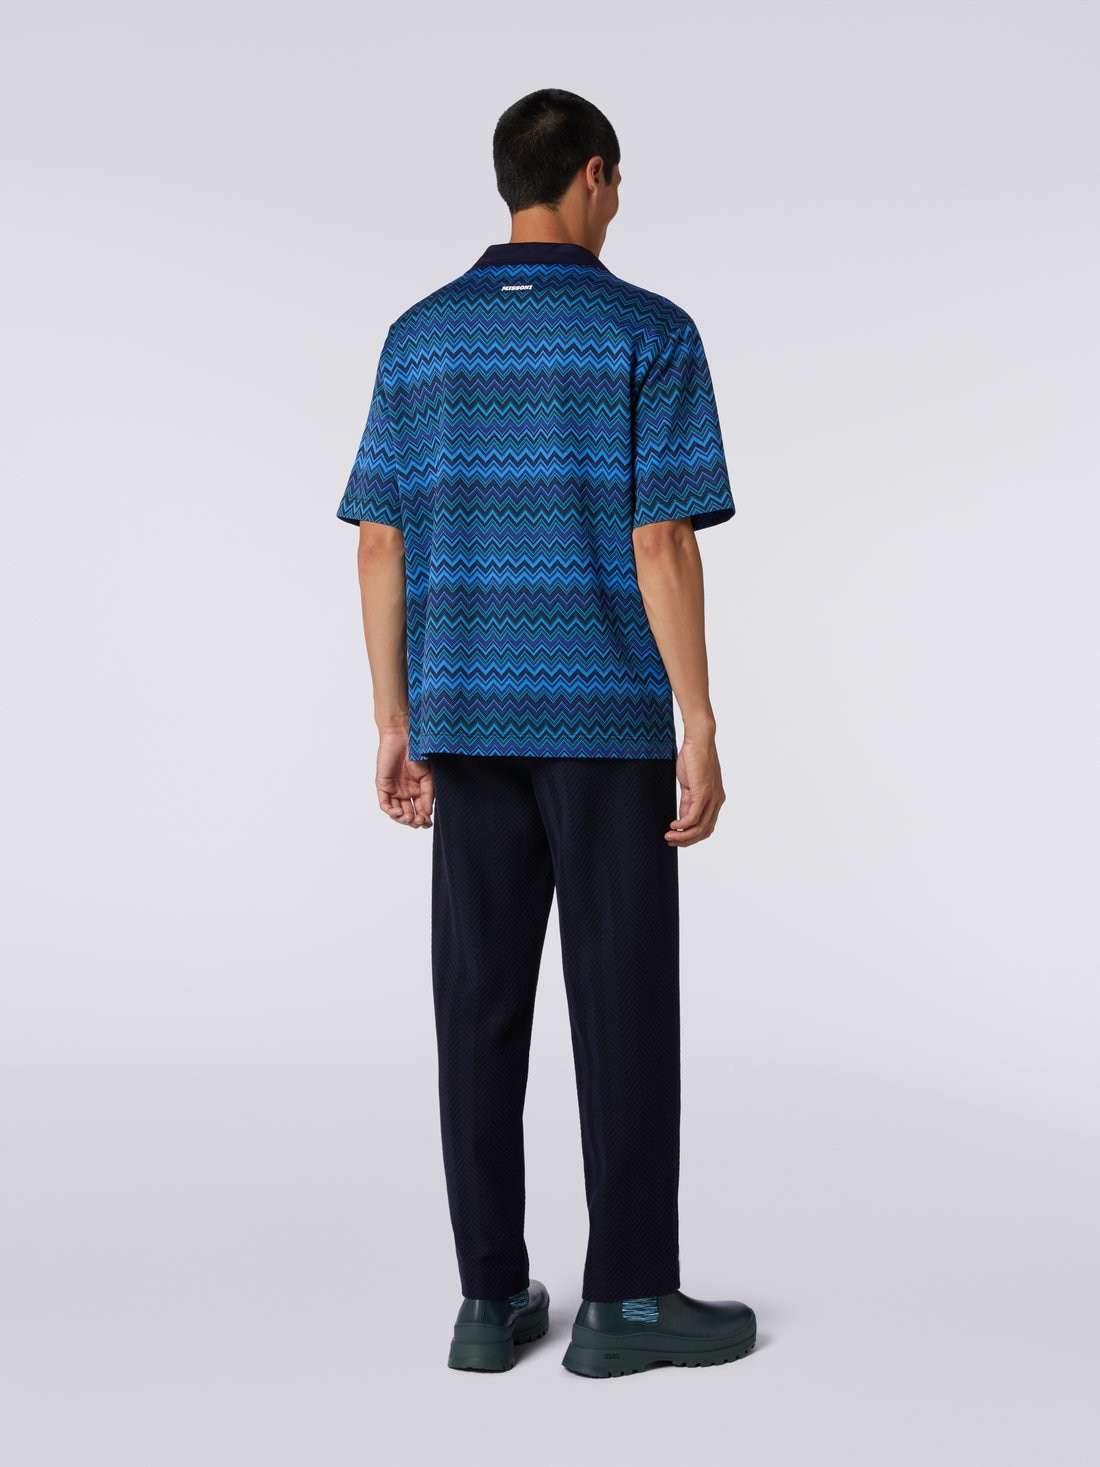 Short-sleeved jacquard knit cotton jersey shirt, Blue - US23WJ0BBJ00BFSM8Z5 - 3